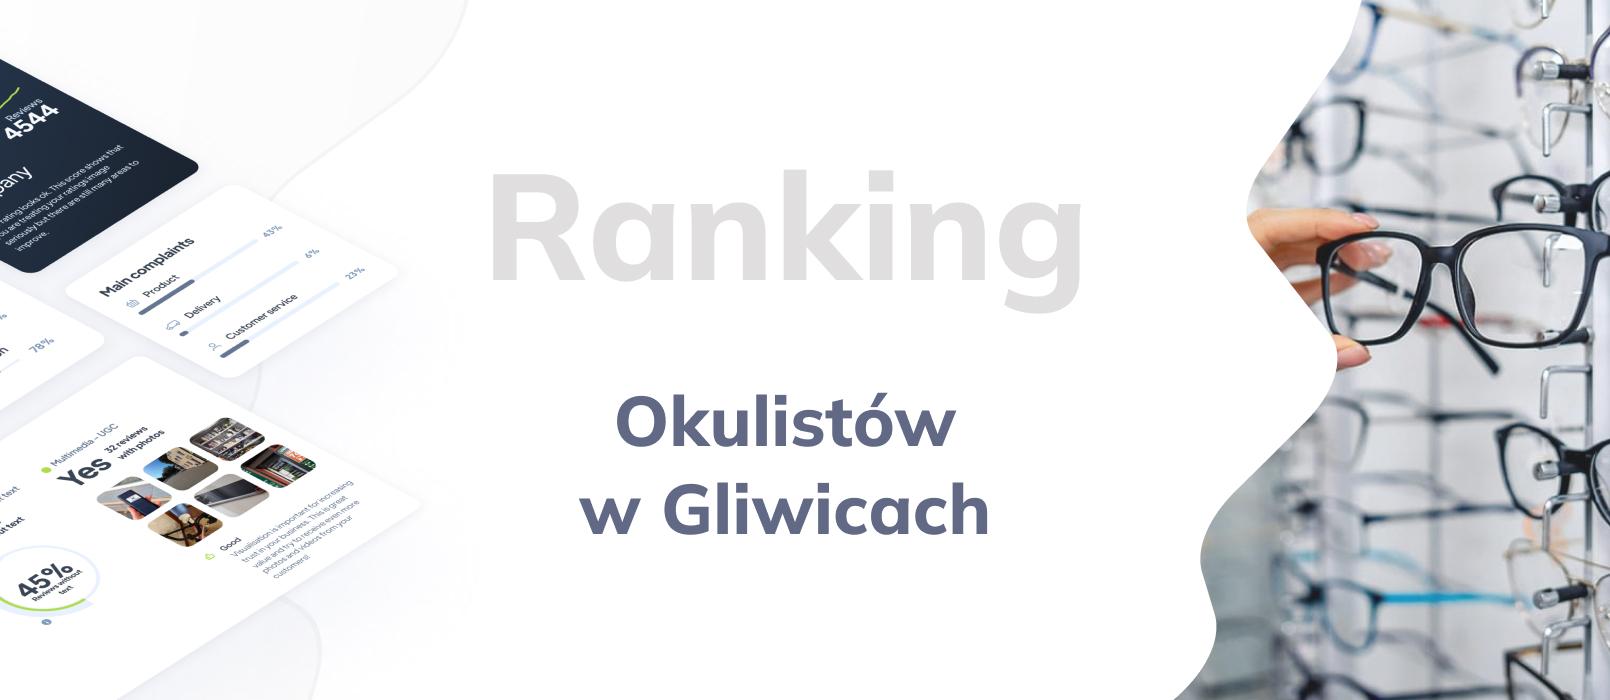 Okuliści w Gliwicach - ranking TOP 10